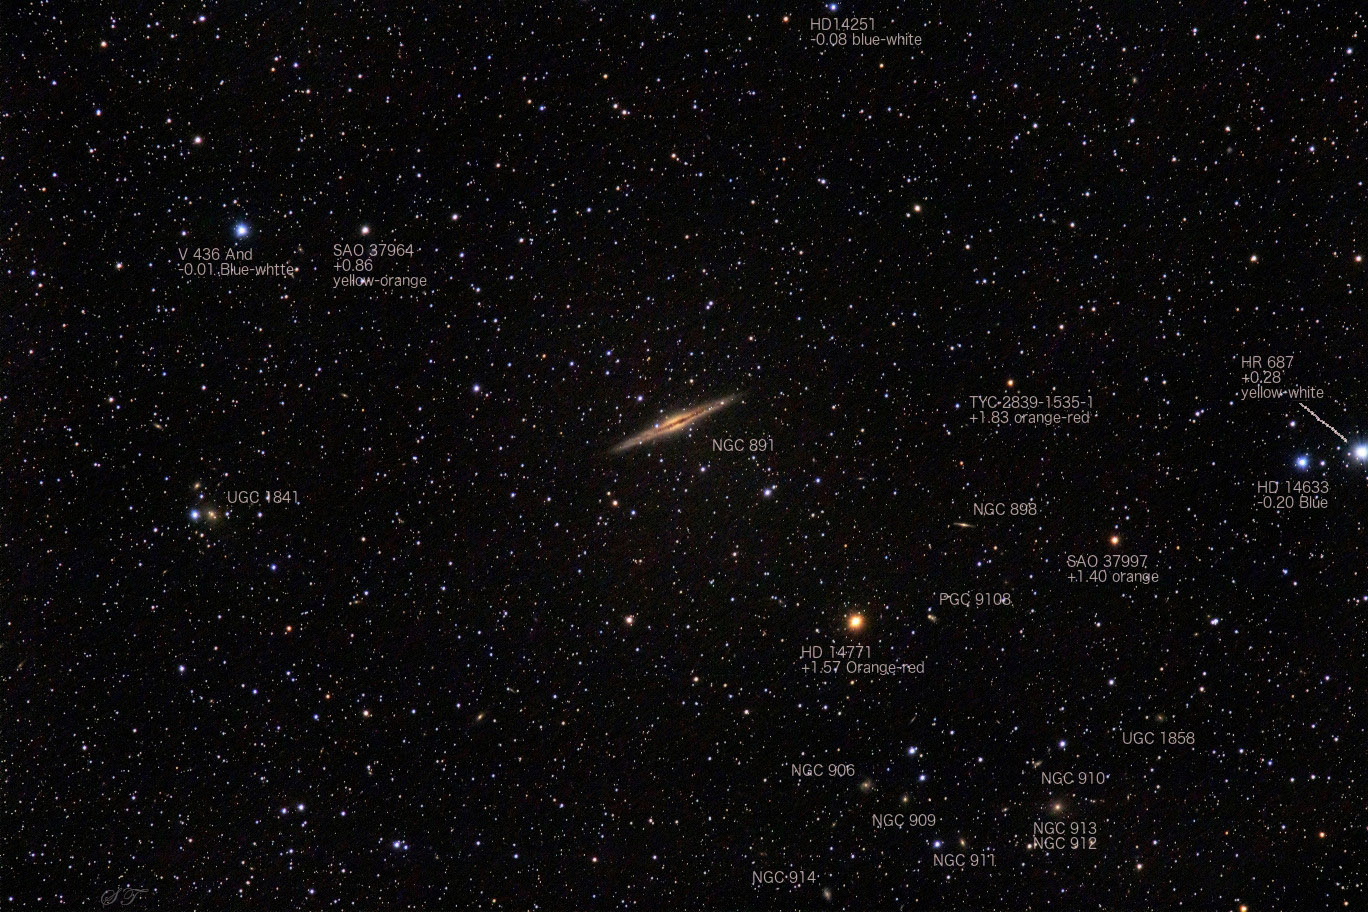 070_700mm_181102_HA_33x90s_NGC891_7D2b_names.jpg